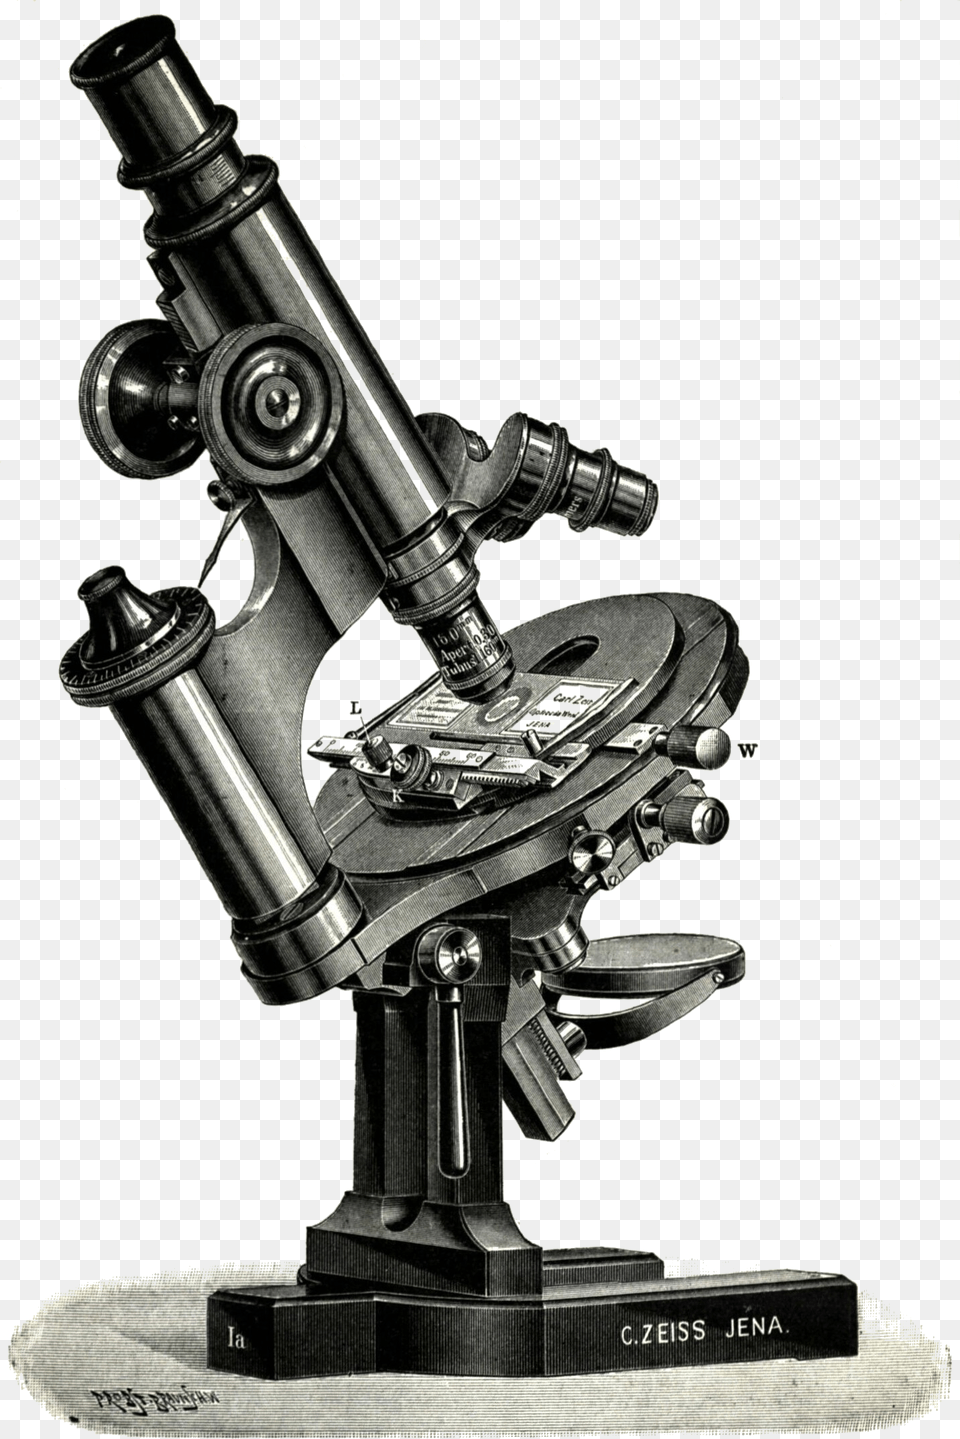 Ottv Slovnk Naun Microscope Png Image